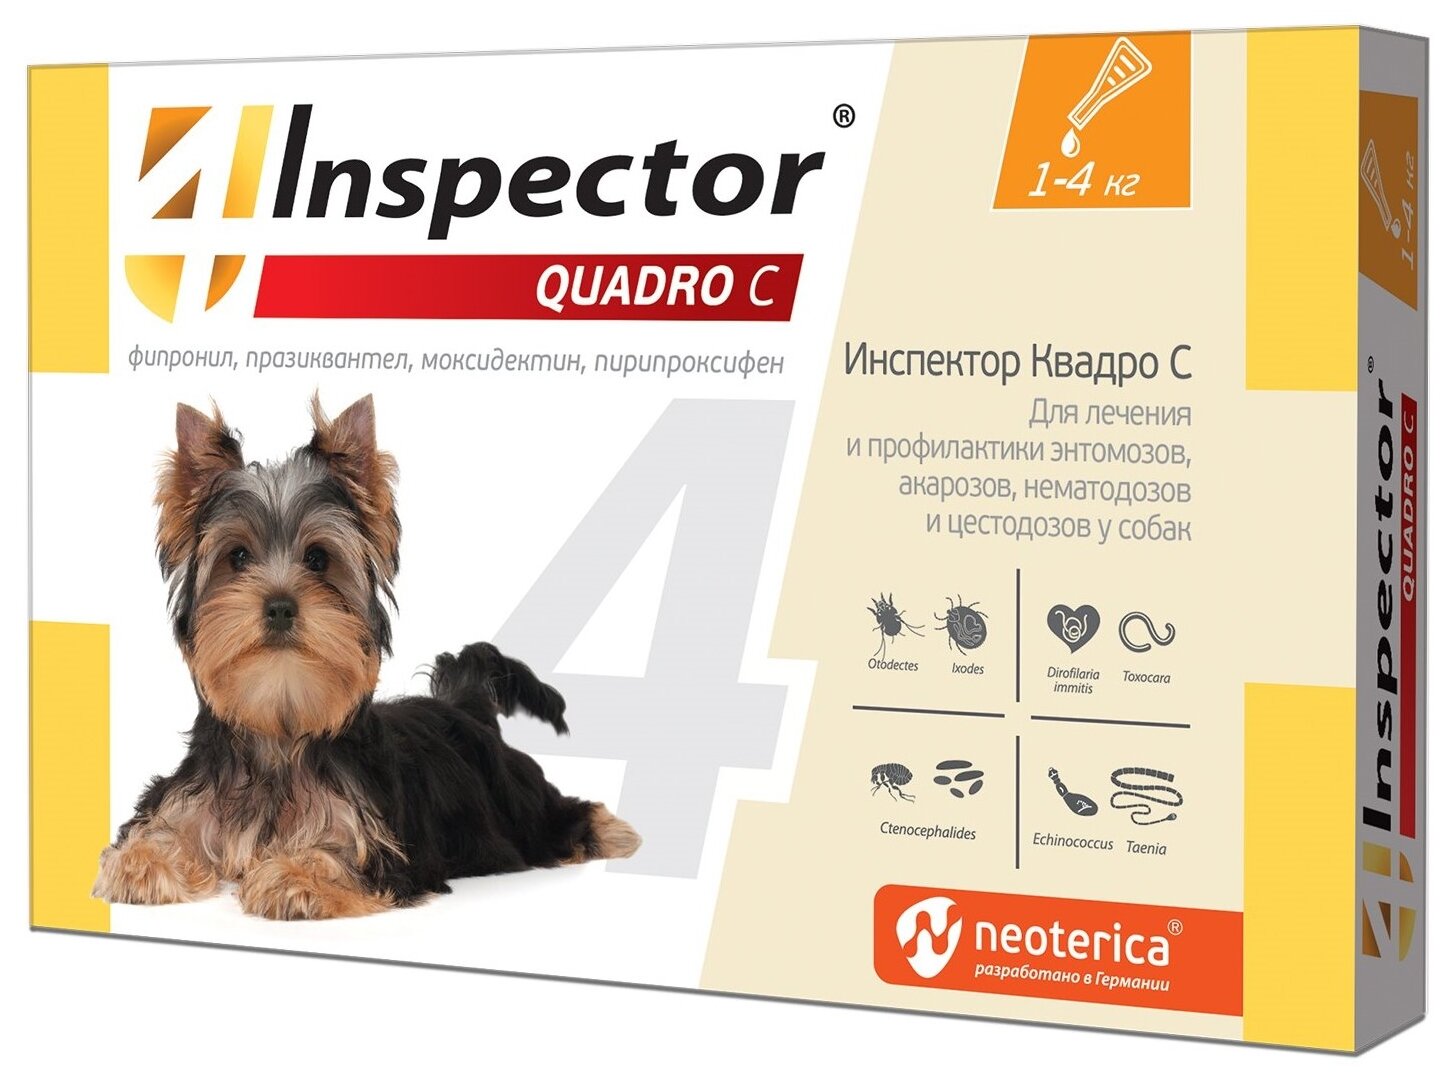 Inspector Quadro инсекто-акарицидные капли от всех паразитов для собак 1-4 кг